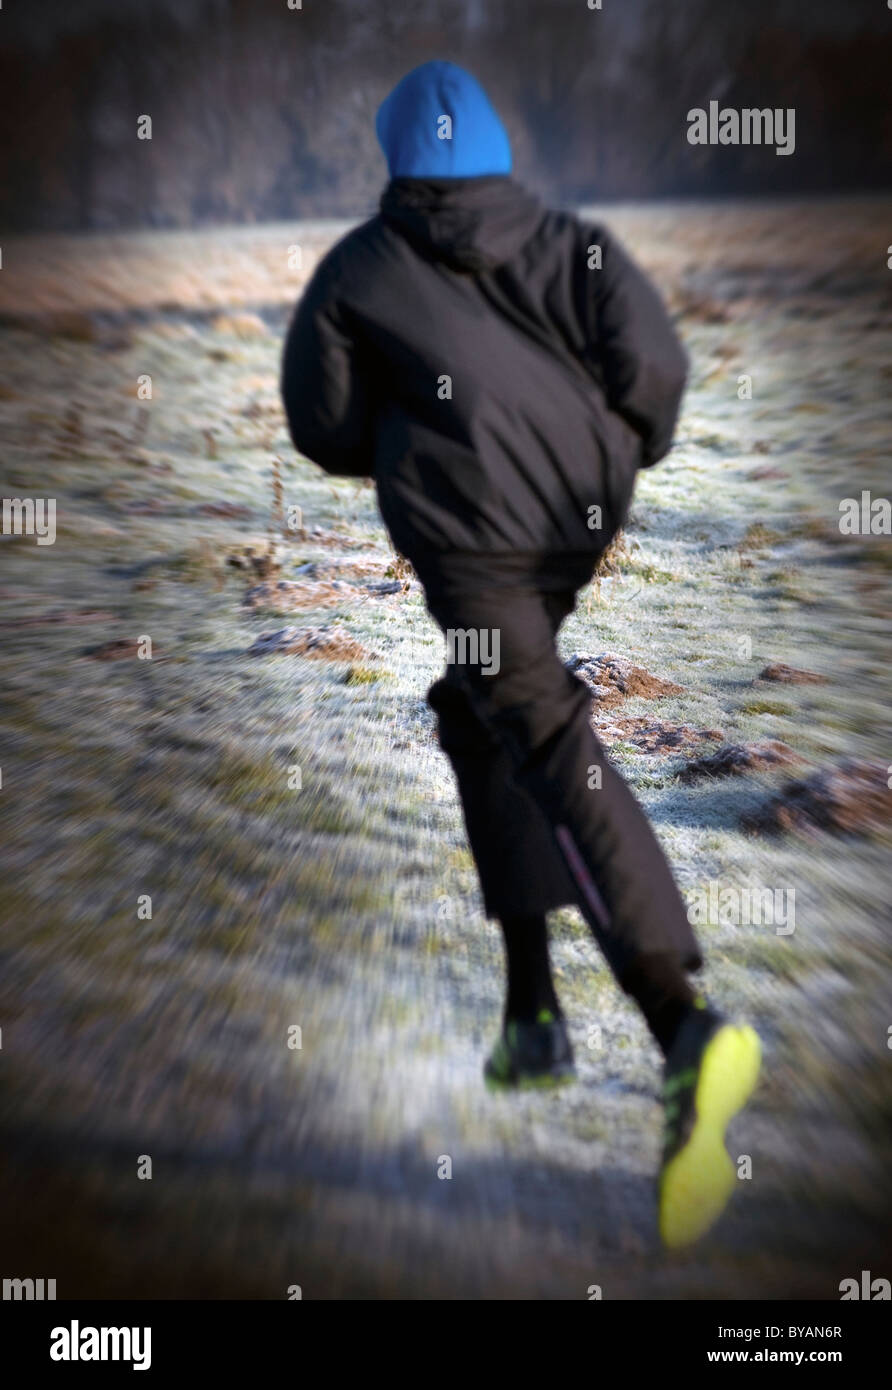 man in hoody running Stock Photo